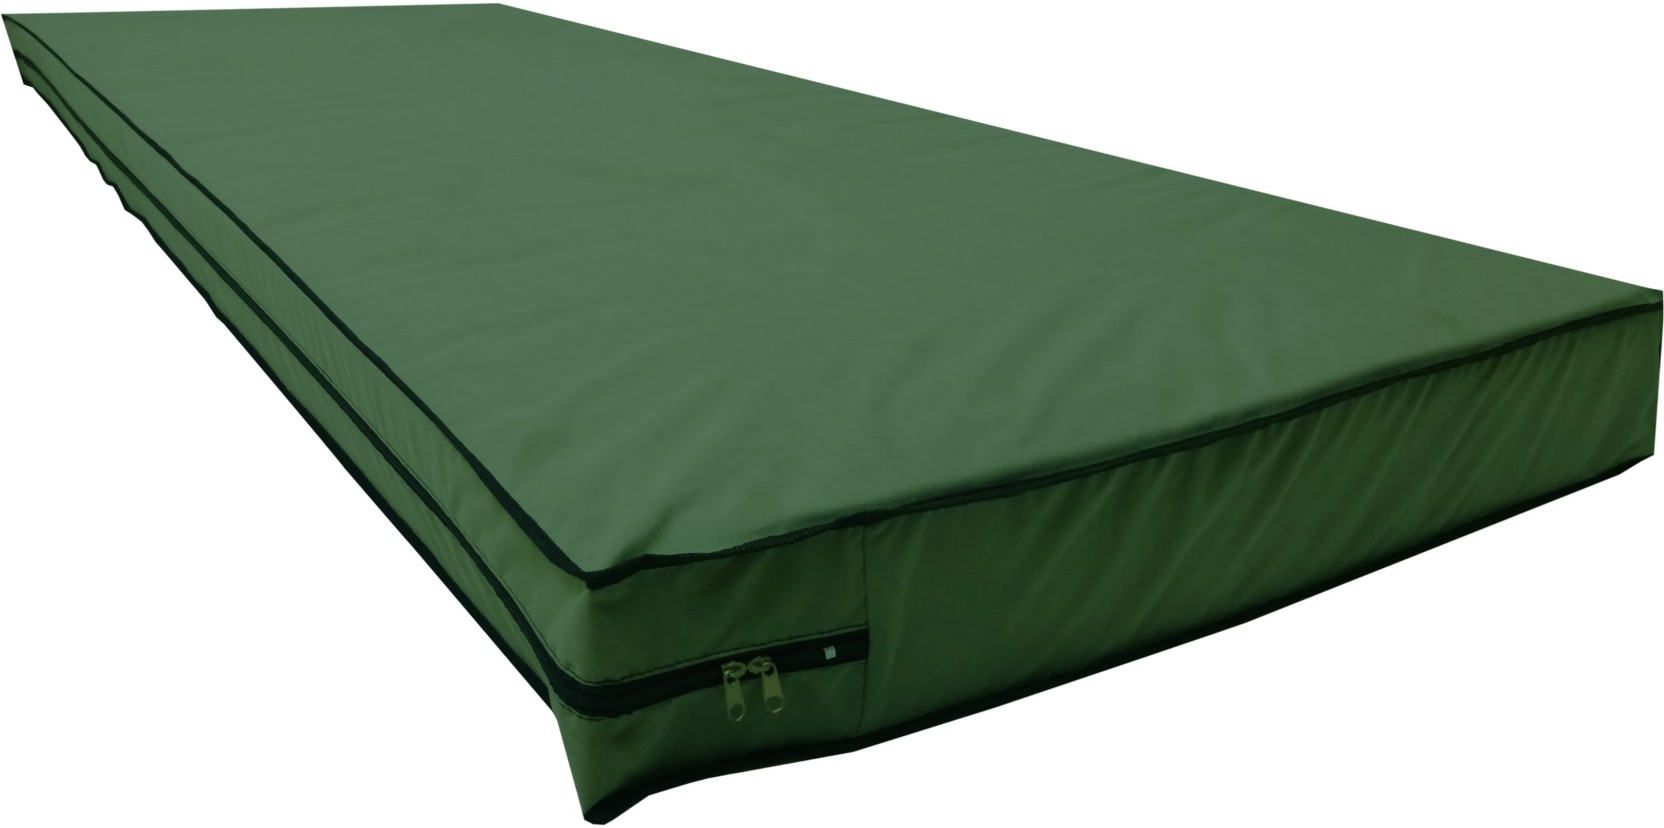 zippered mattress protector to fit dorm mattress